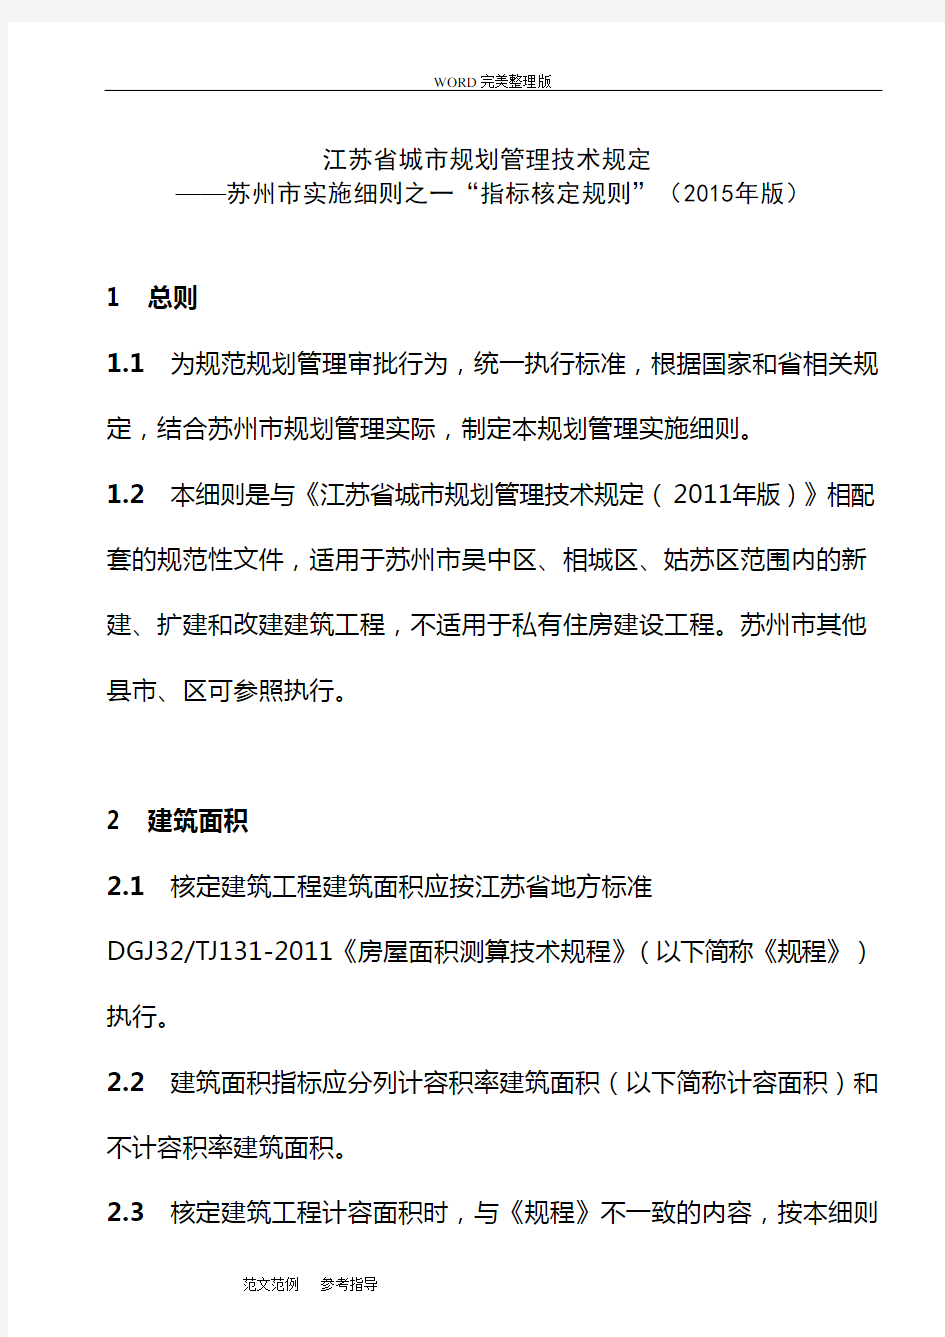 江苏省城市规划管理技术规定-苏州市实施细则之一“指标核定规则”(2015年版)